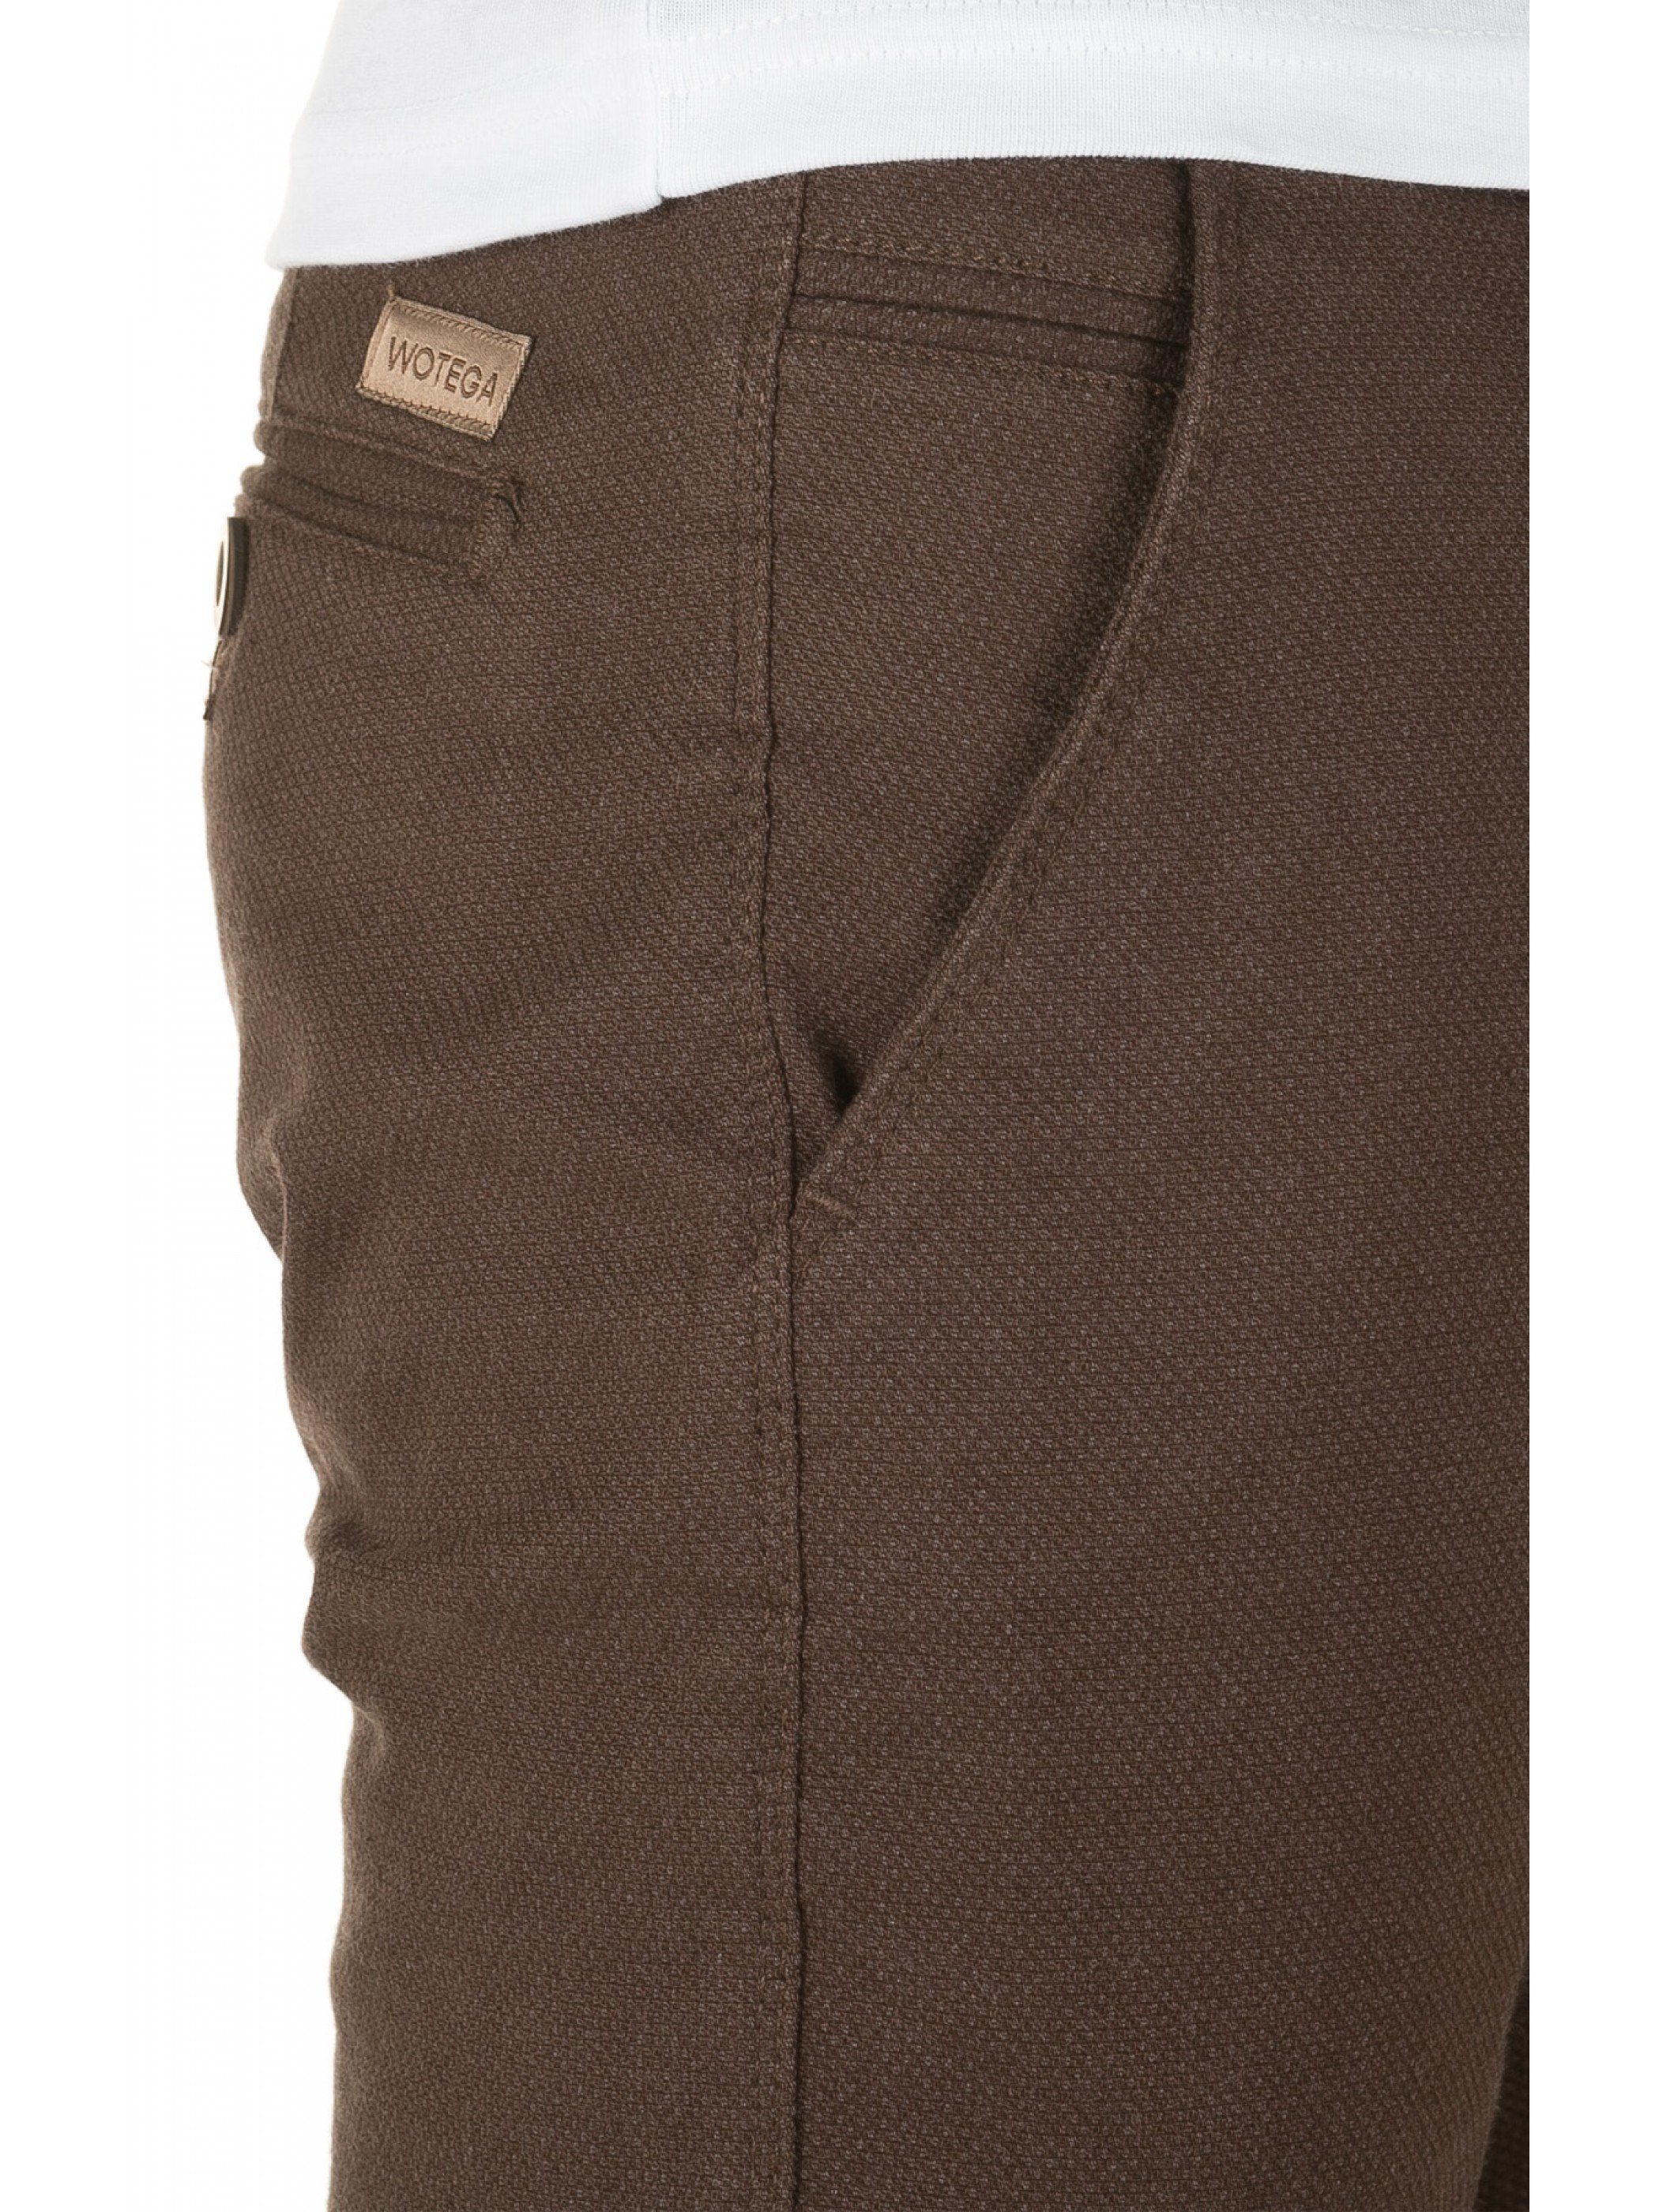 WOTEGA Chinohose Chino brown Braun hohem Rengar Tragekomfort (seal mit 1314) Pants